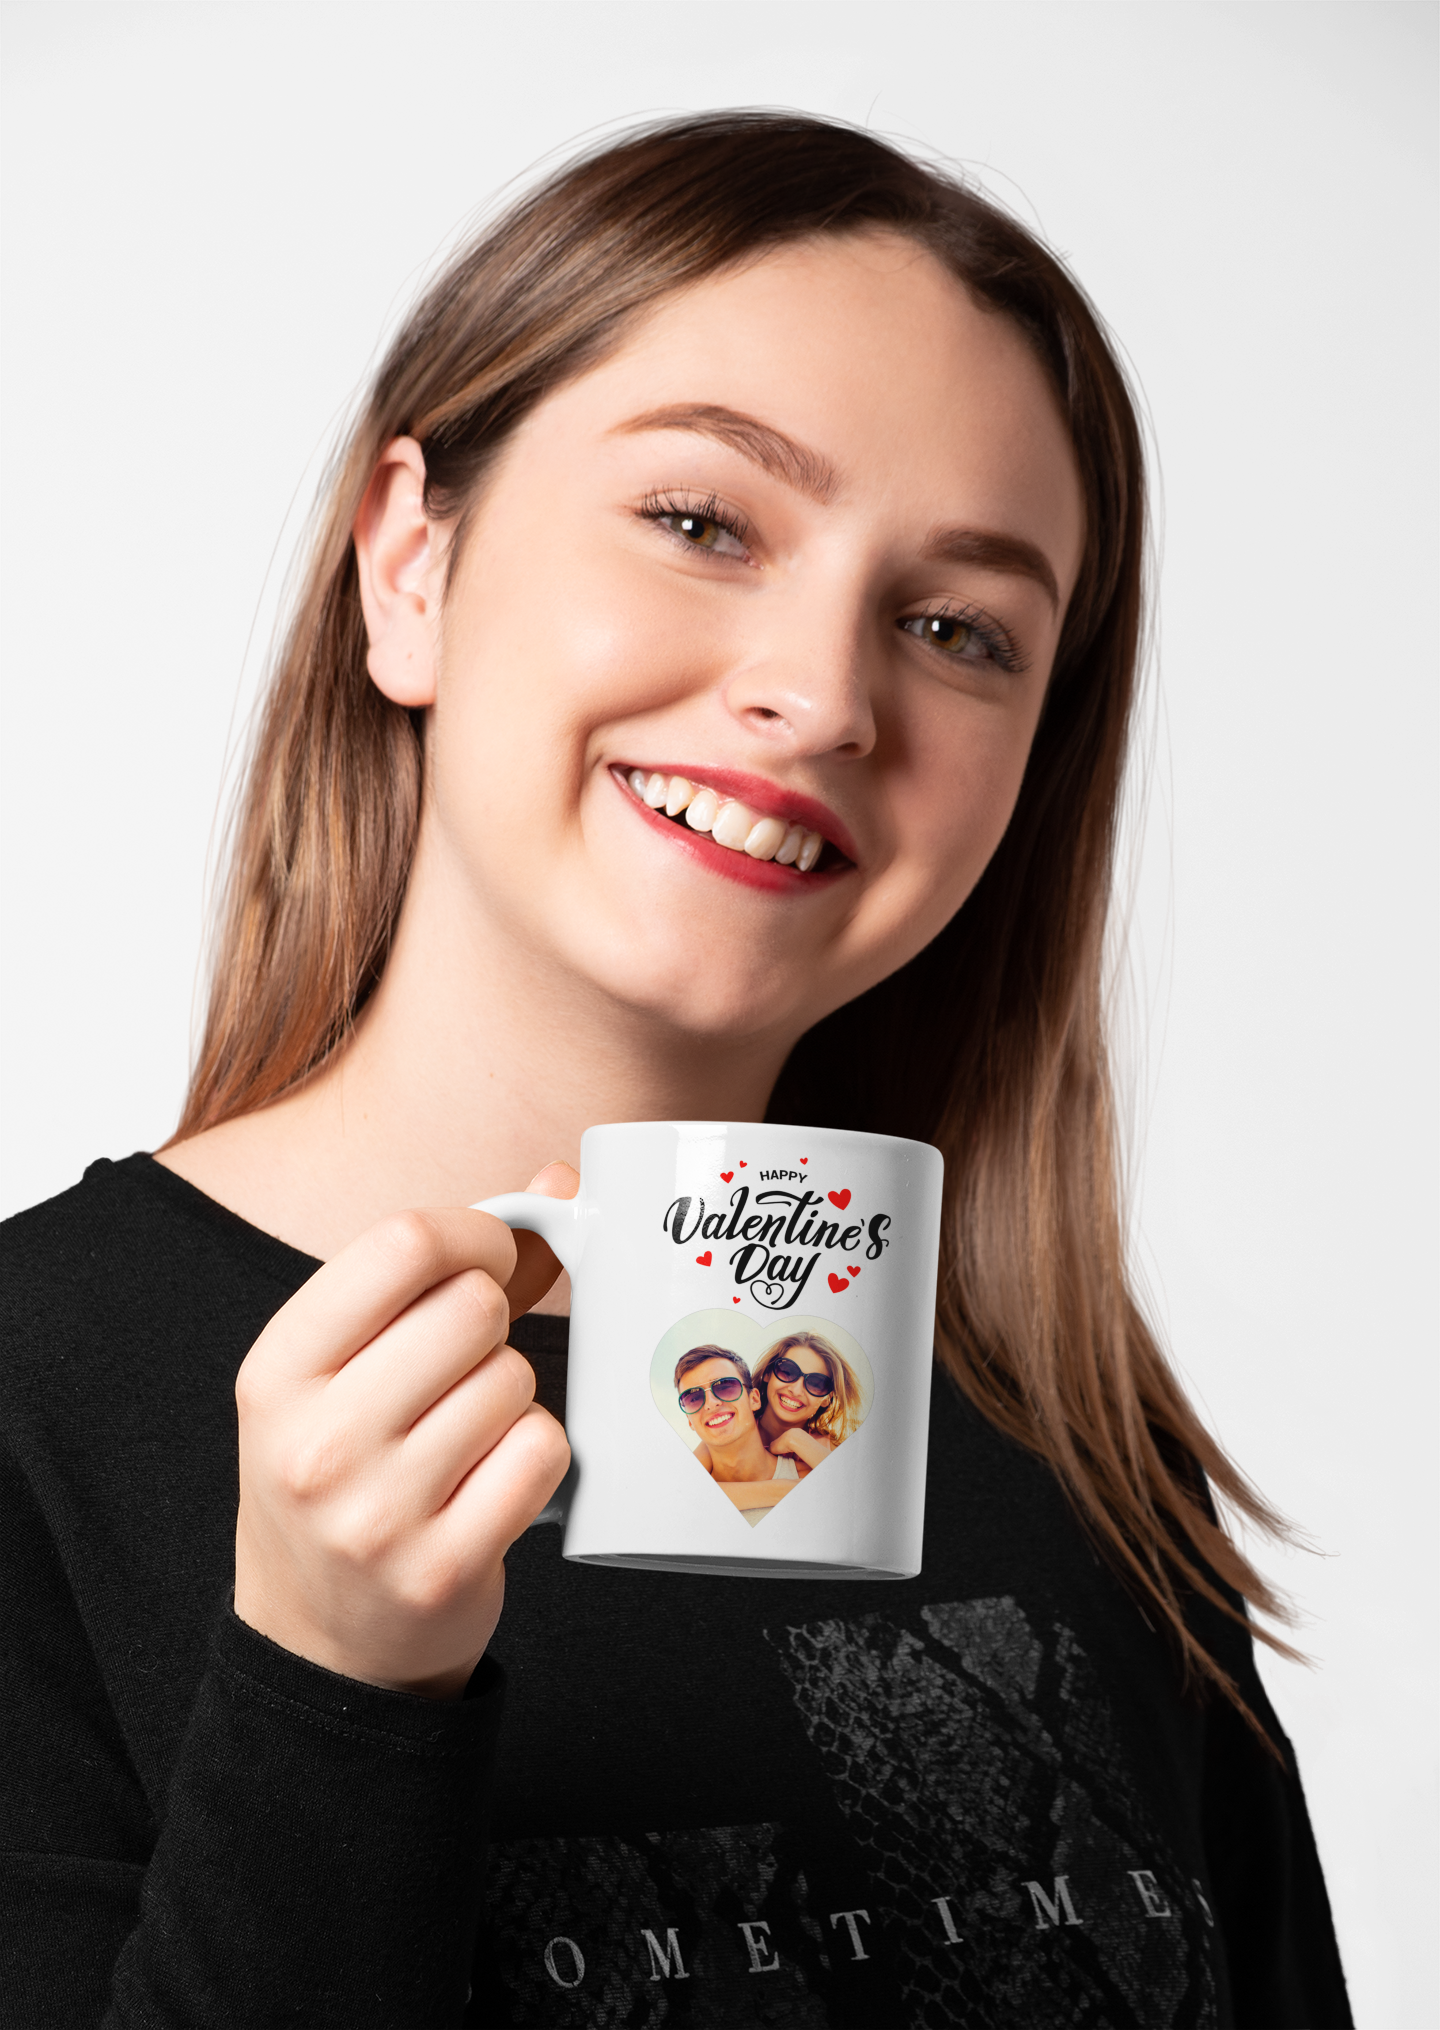 Valentinstag Tasse personalisiert mit Foto, Happy Valentine's day, Paar, Liebe Partner Partnerin Ehemann Ehefrau Freund Freundin